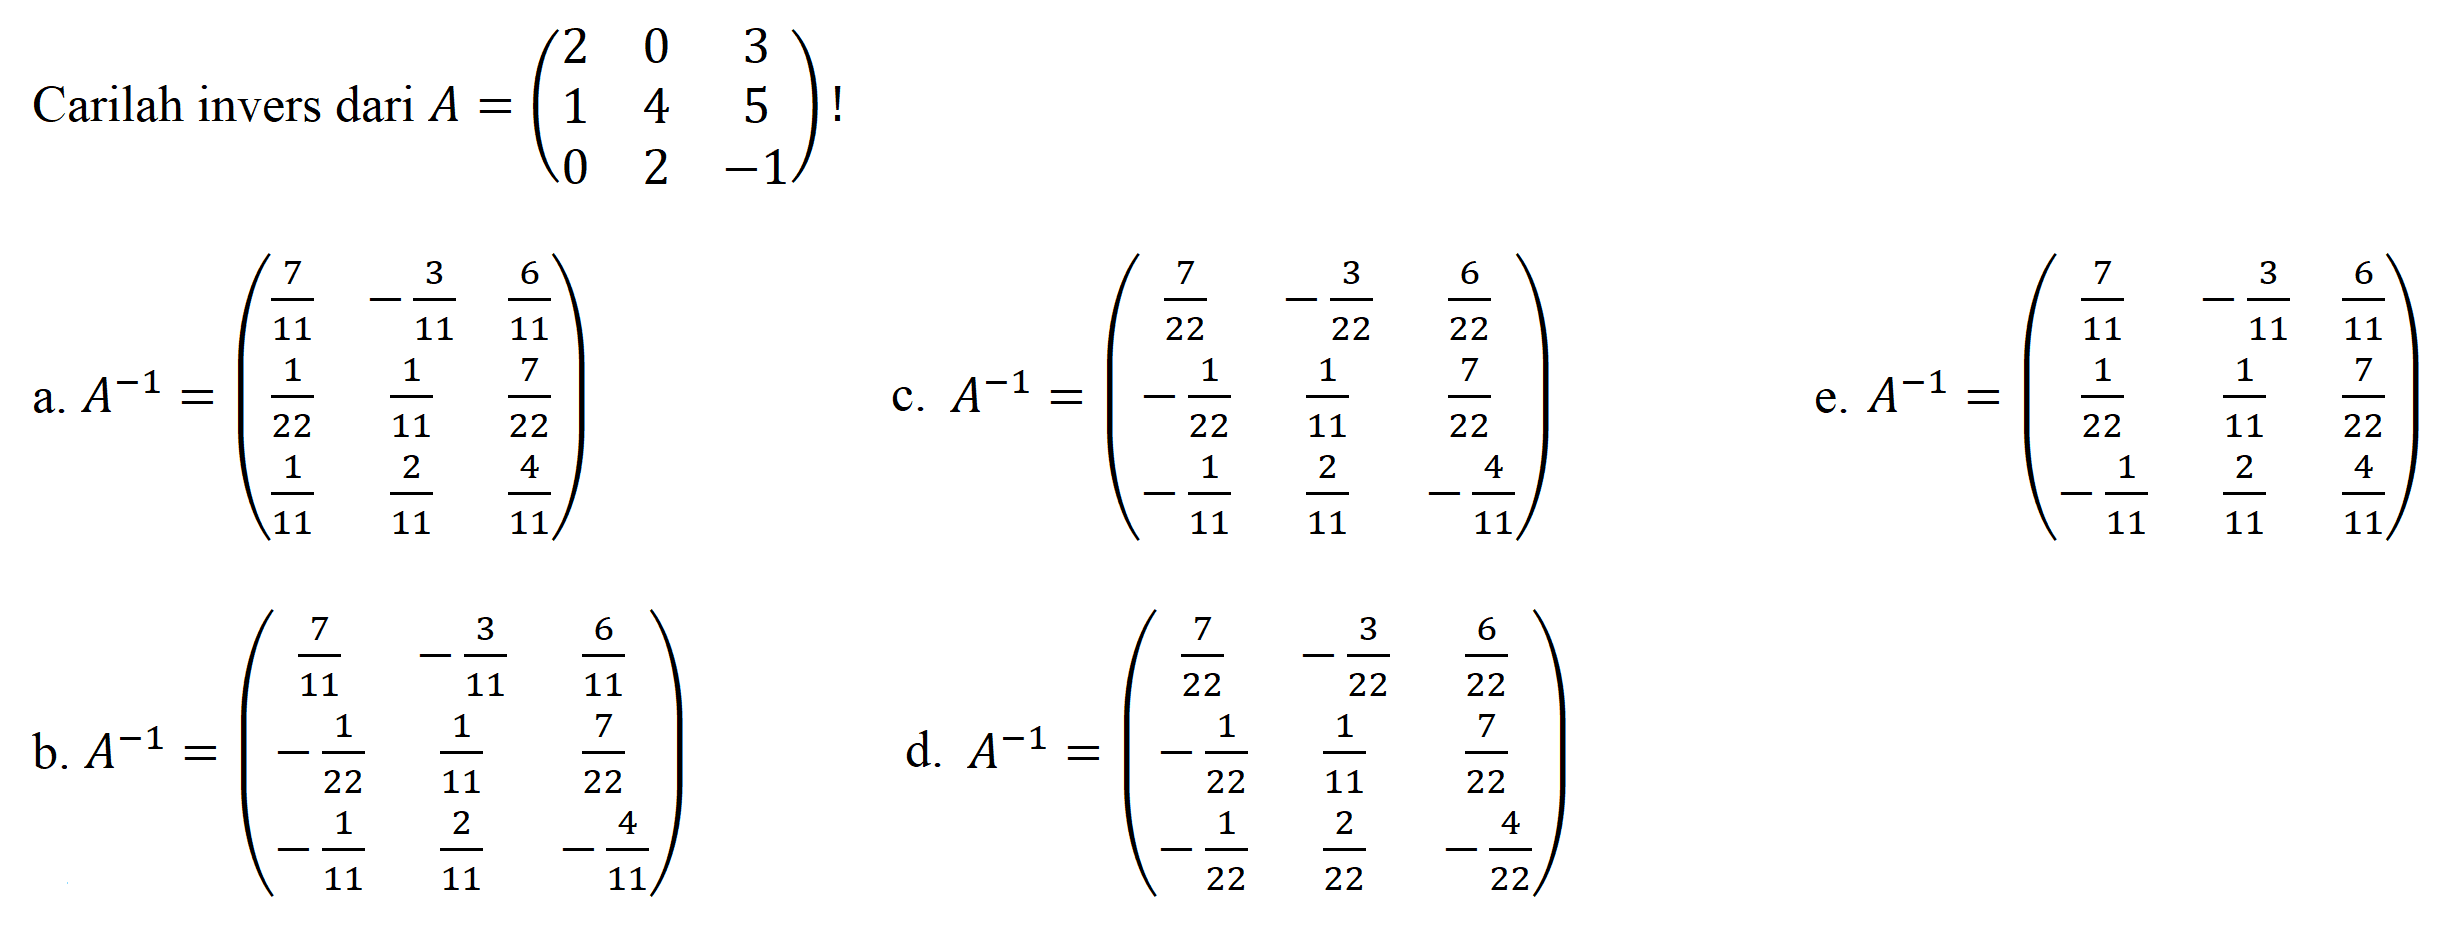 Carilah invers dari  A=(2  0  3  1  4  5  0  2  -1) ! 
